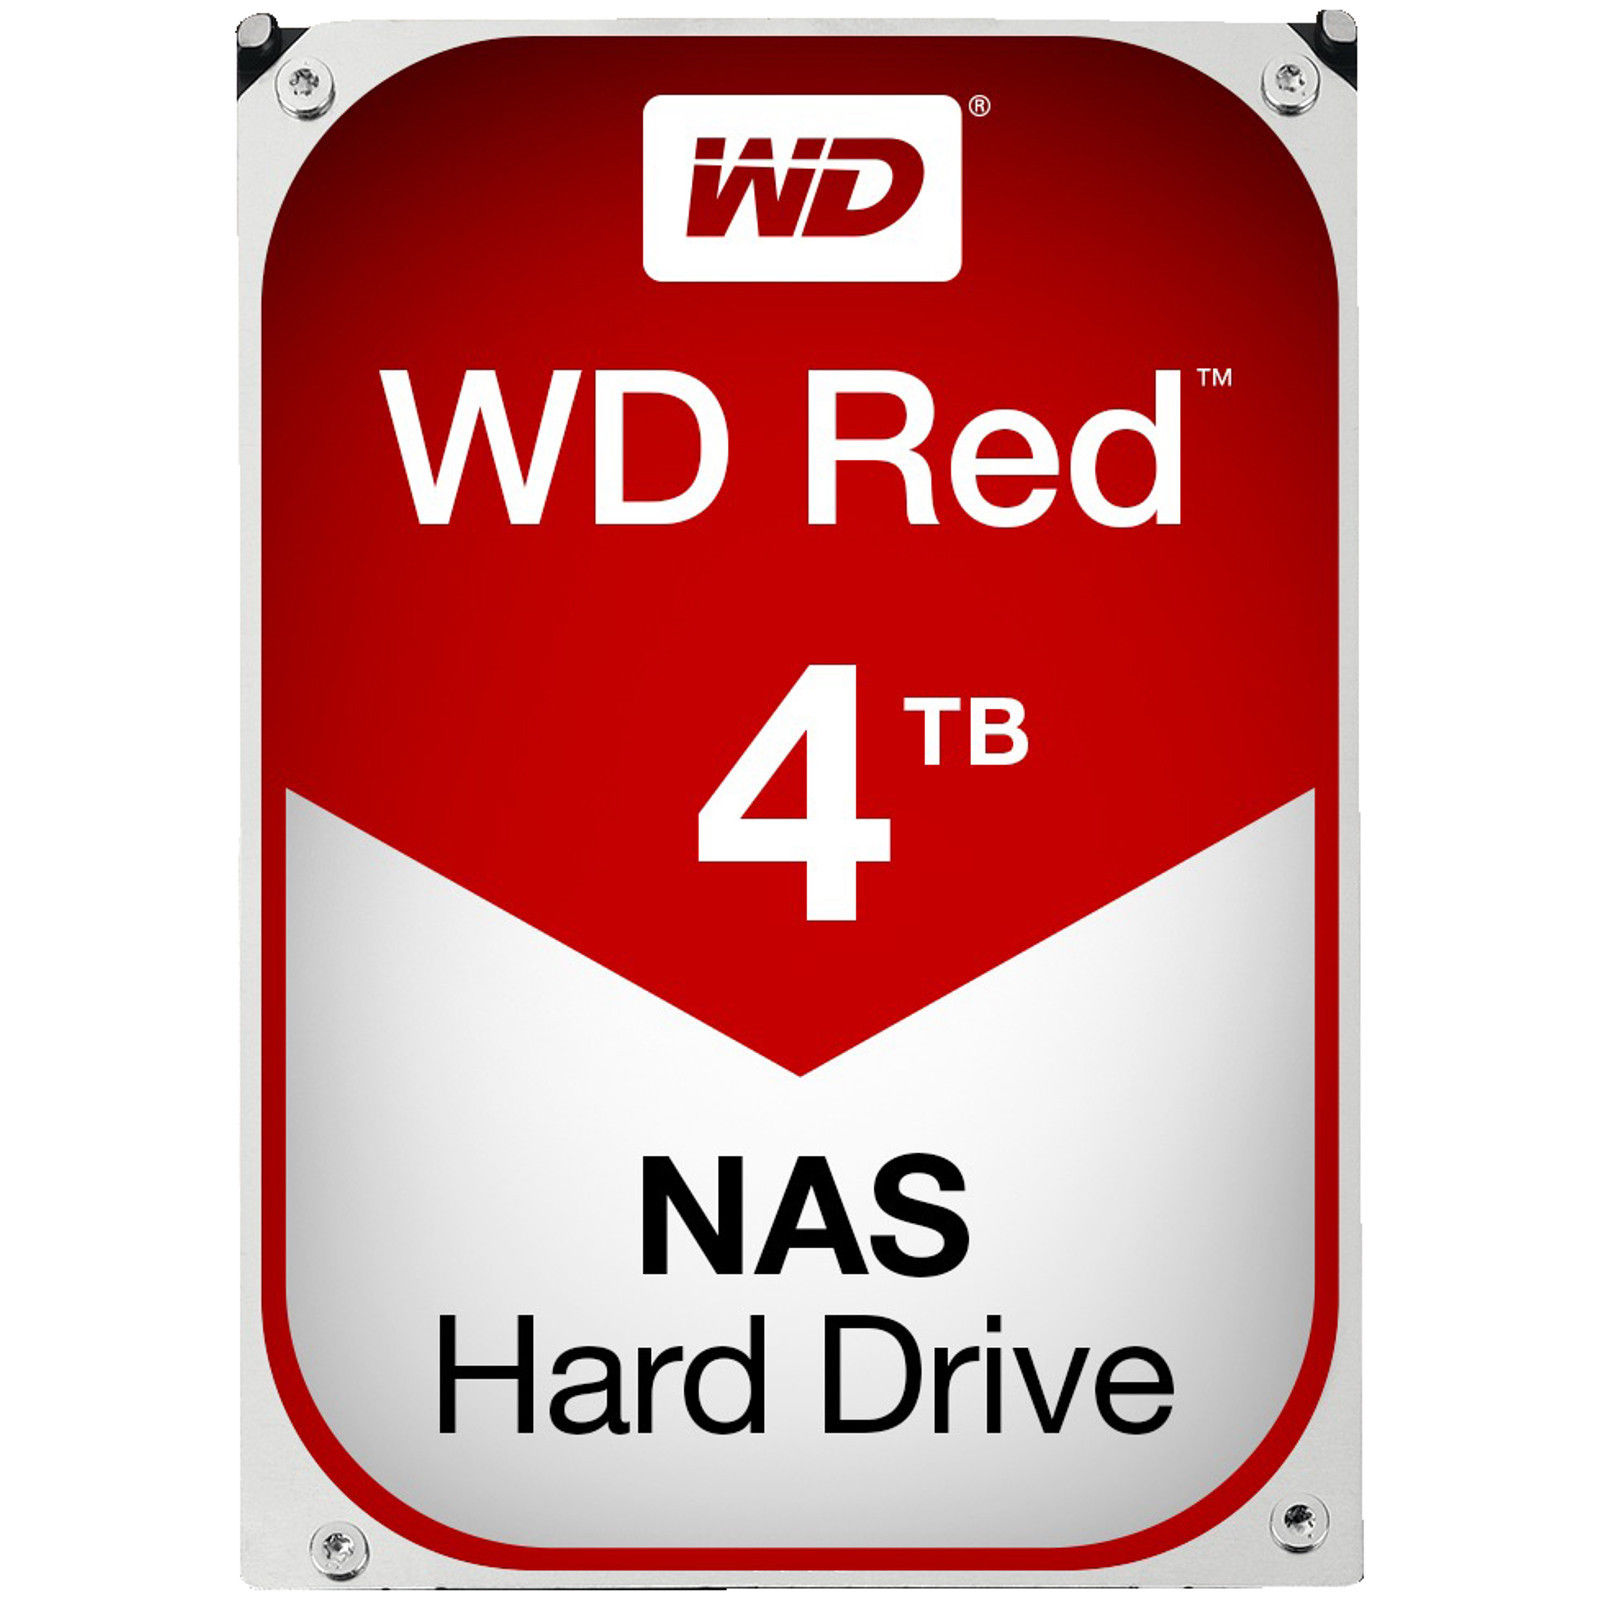 Bild zu [nur bis 9 Uhr] Interne Festplatte 3,5 Zoll Festplatte Western Digital Red [4 TB] für 139€